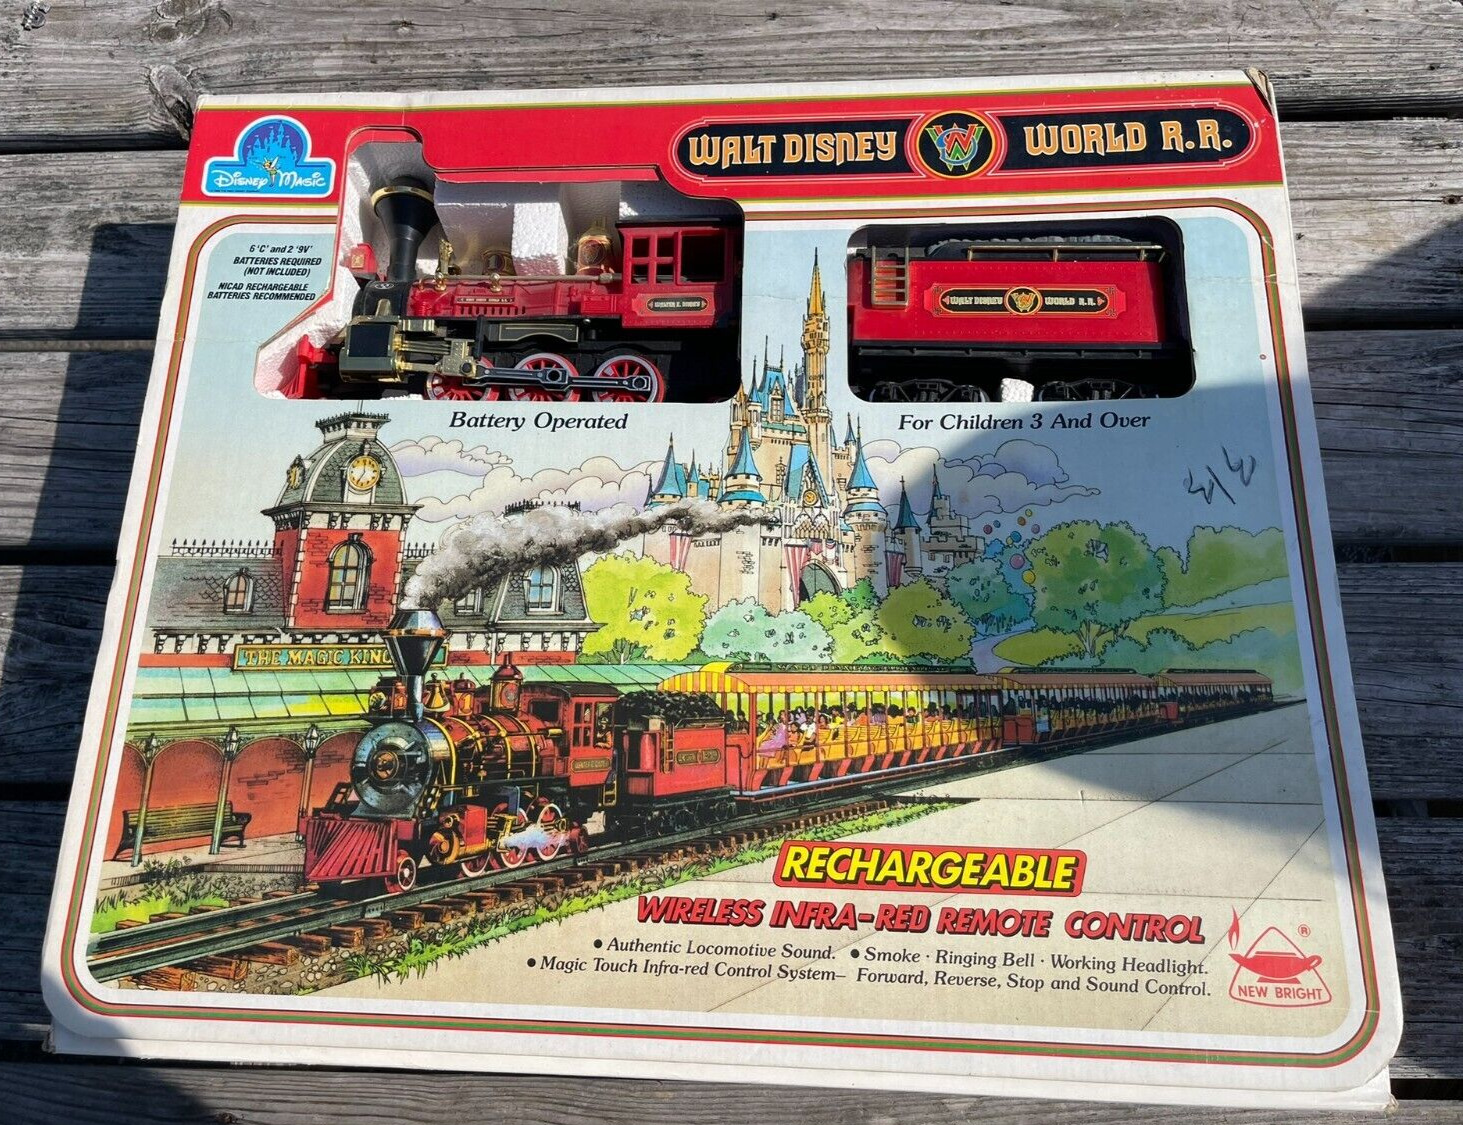 Walt Disney World Railroad Train by New Bright 1988 Vintage